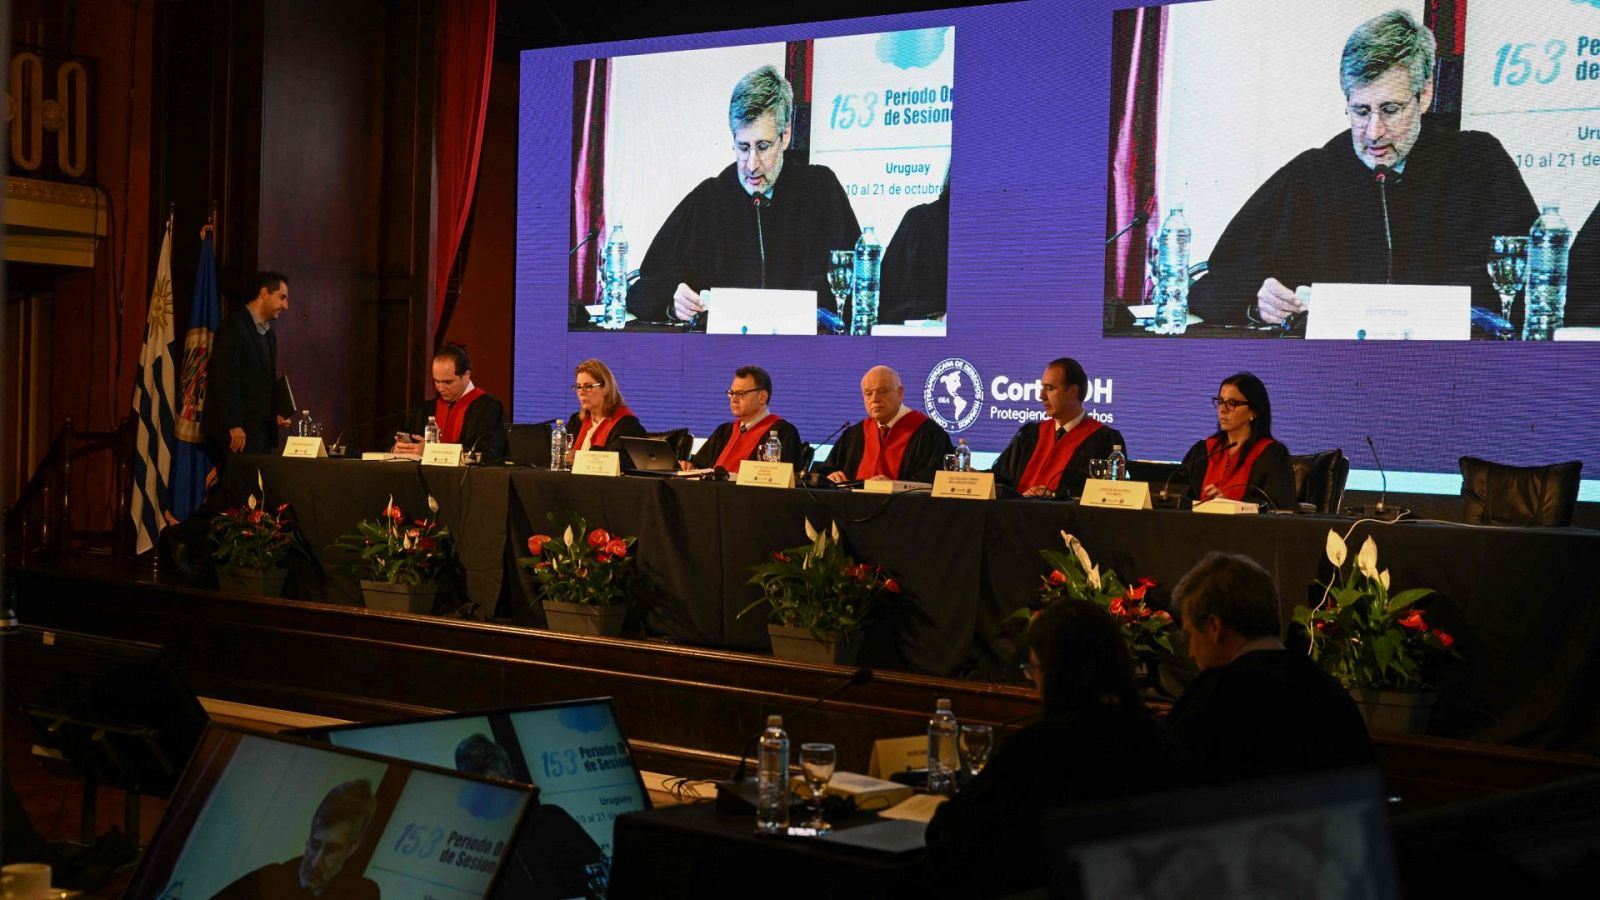 Imagen del 153 período de sesiones de la Corte Interamericana de Derechos Humanos en Montevideo